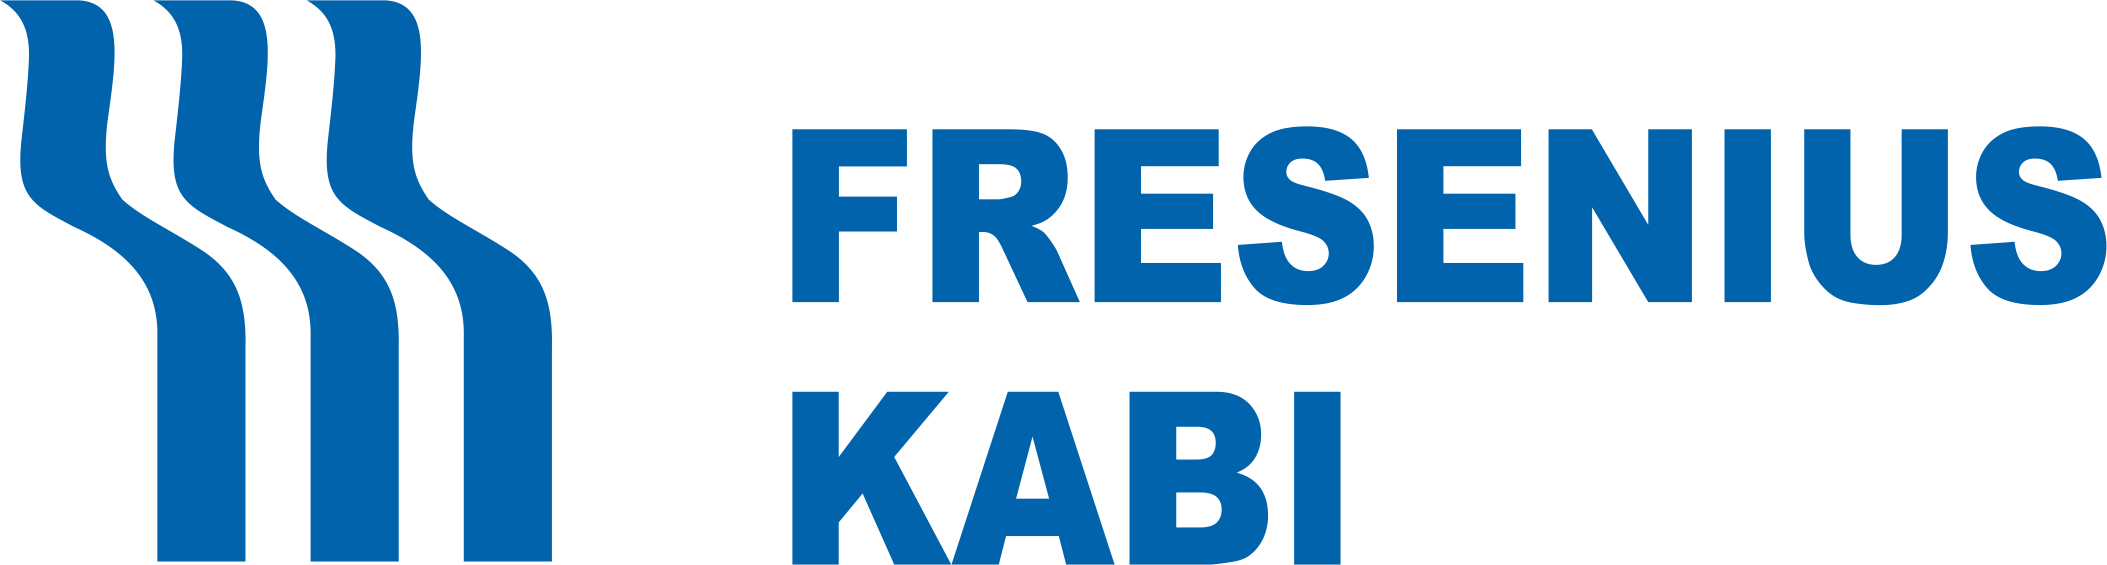 Fresenius Kabi - Amar Equipment Client